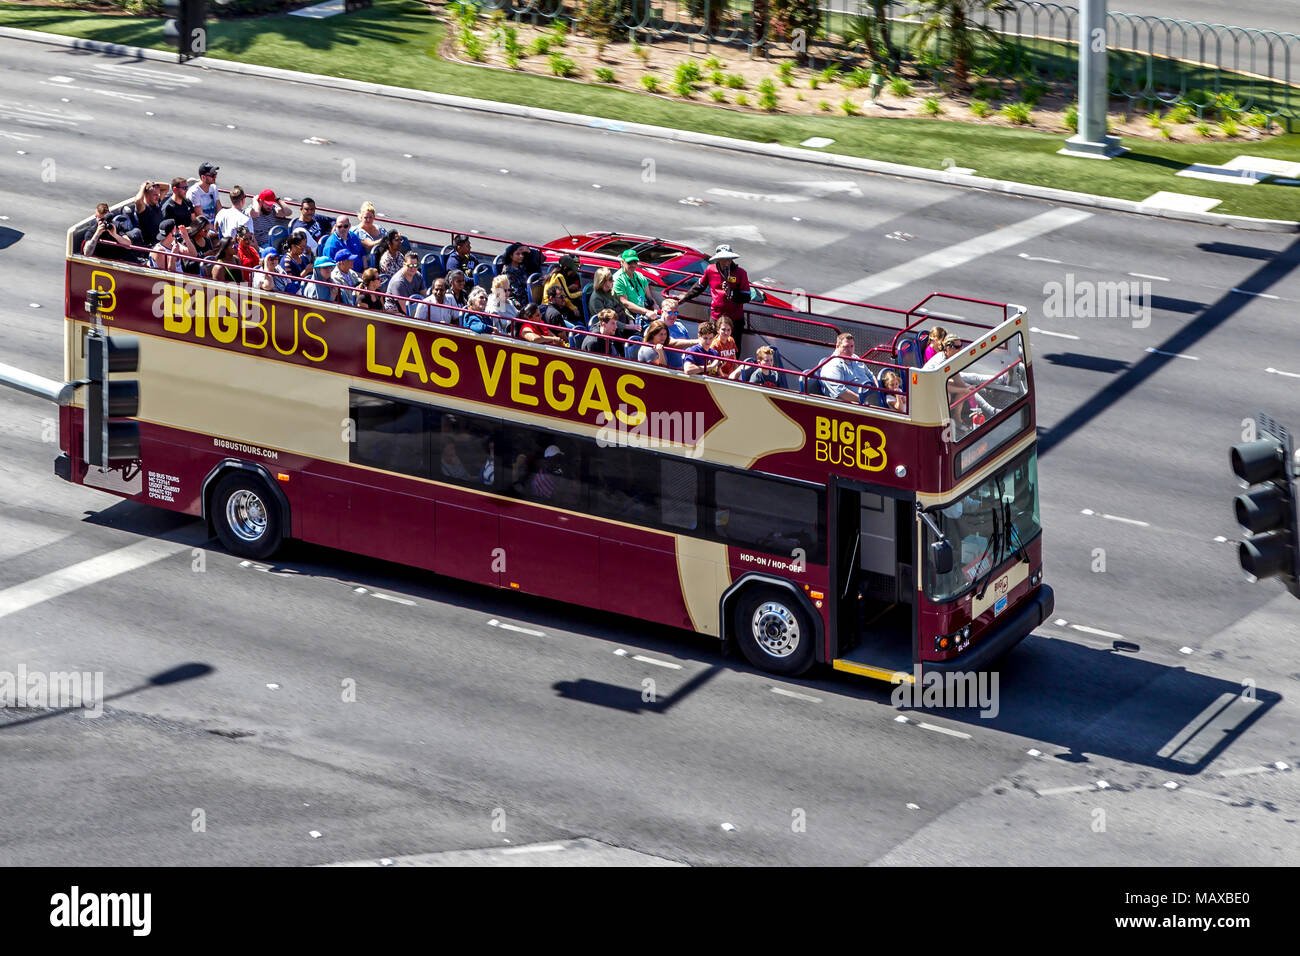 The Big Bus, Las Vegas, Narvarda, U.S.A Stock Photo - Alamy